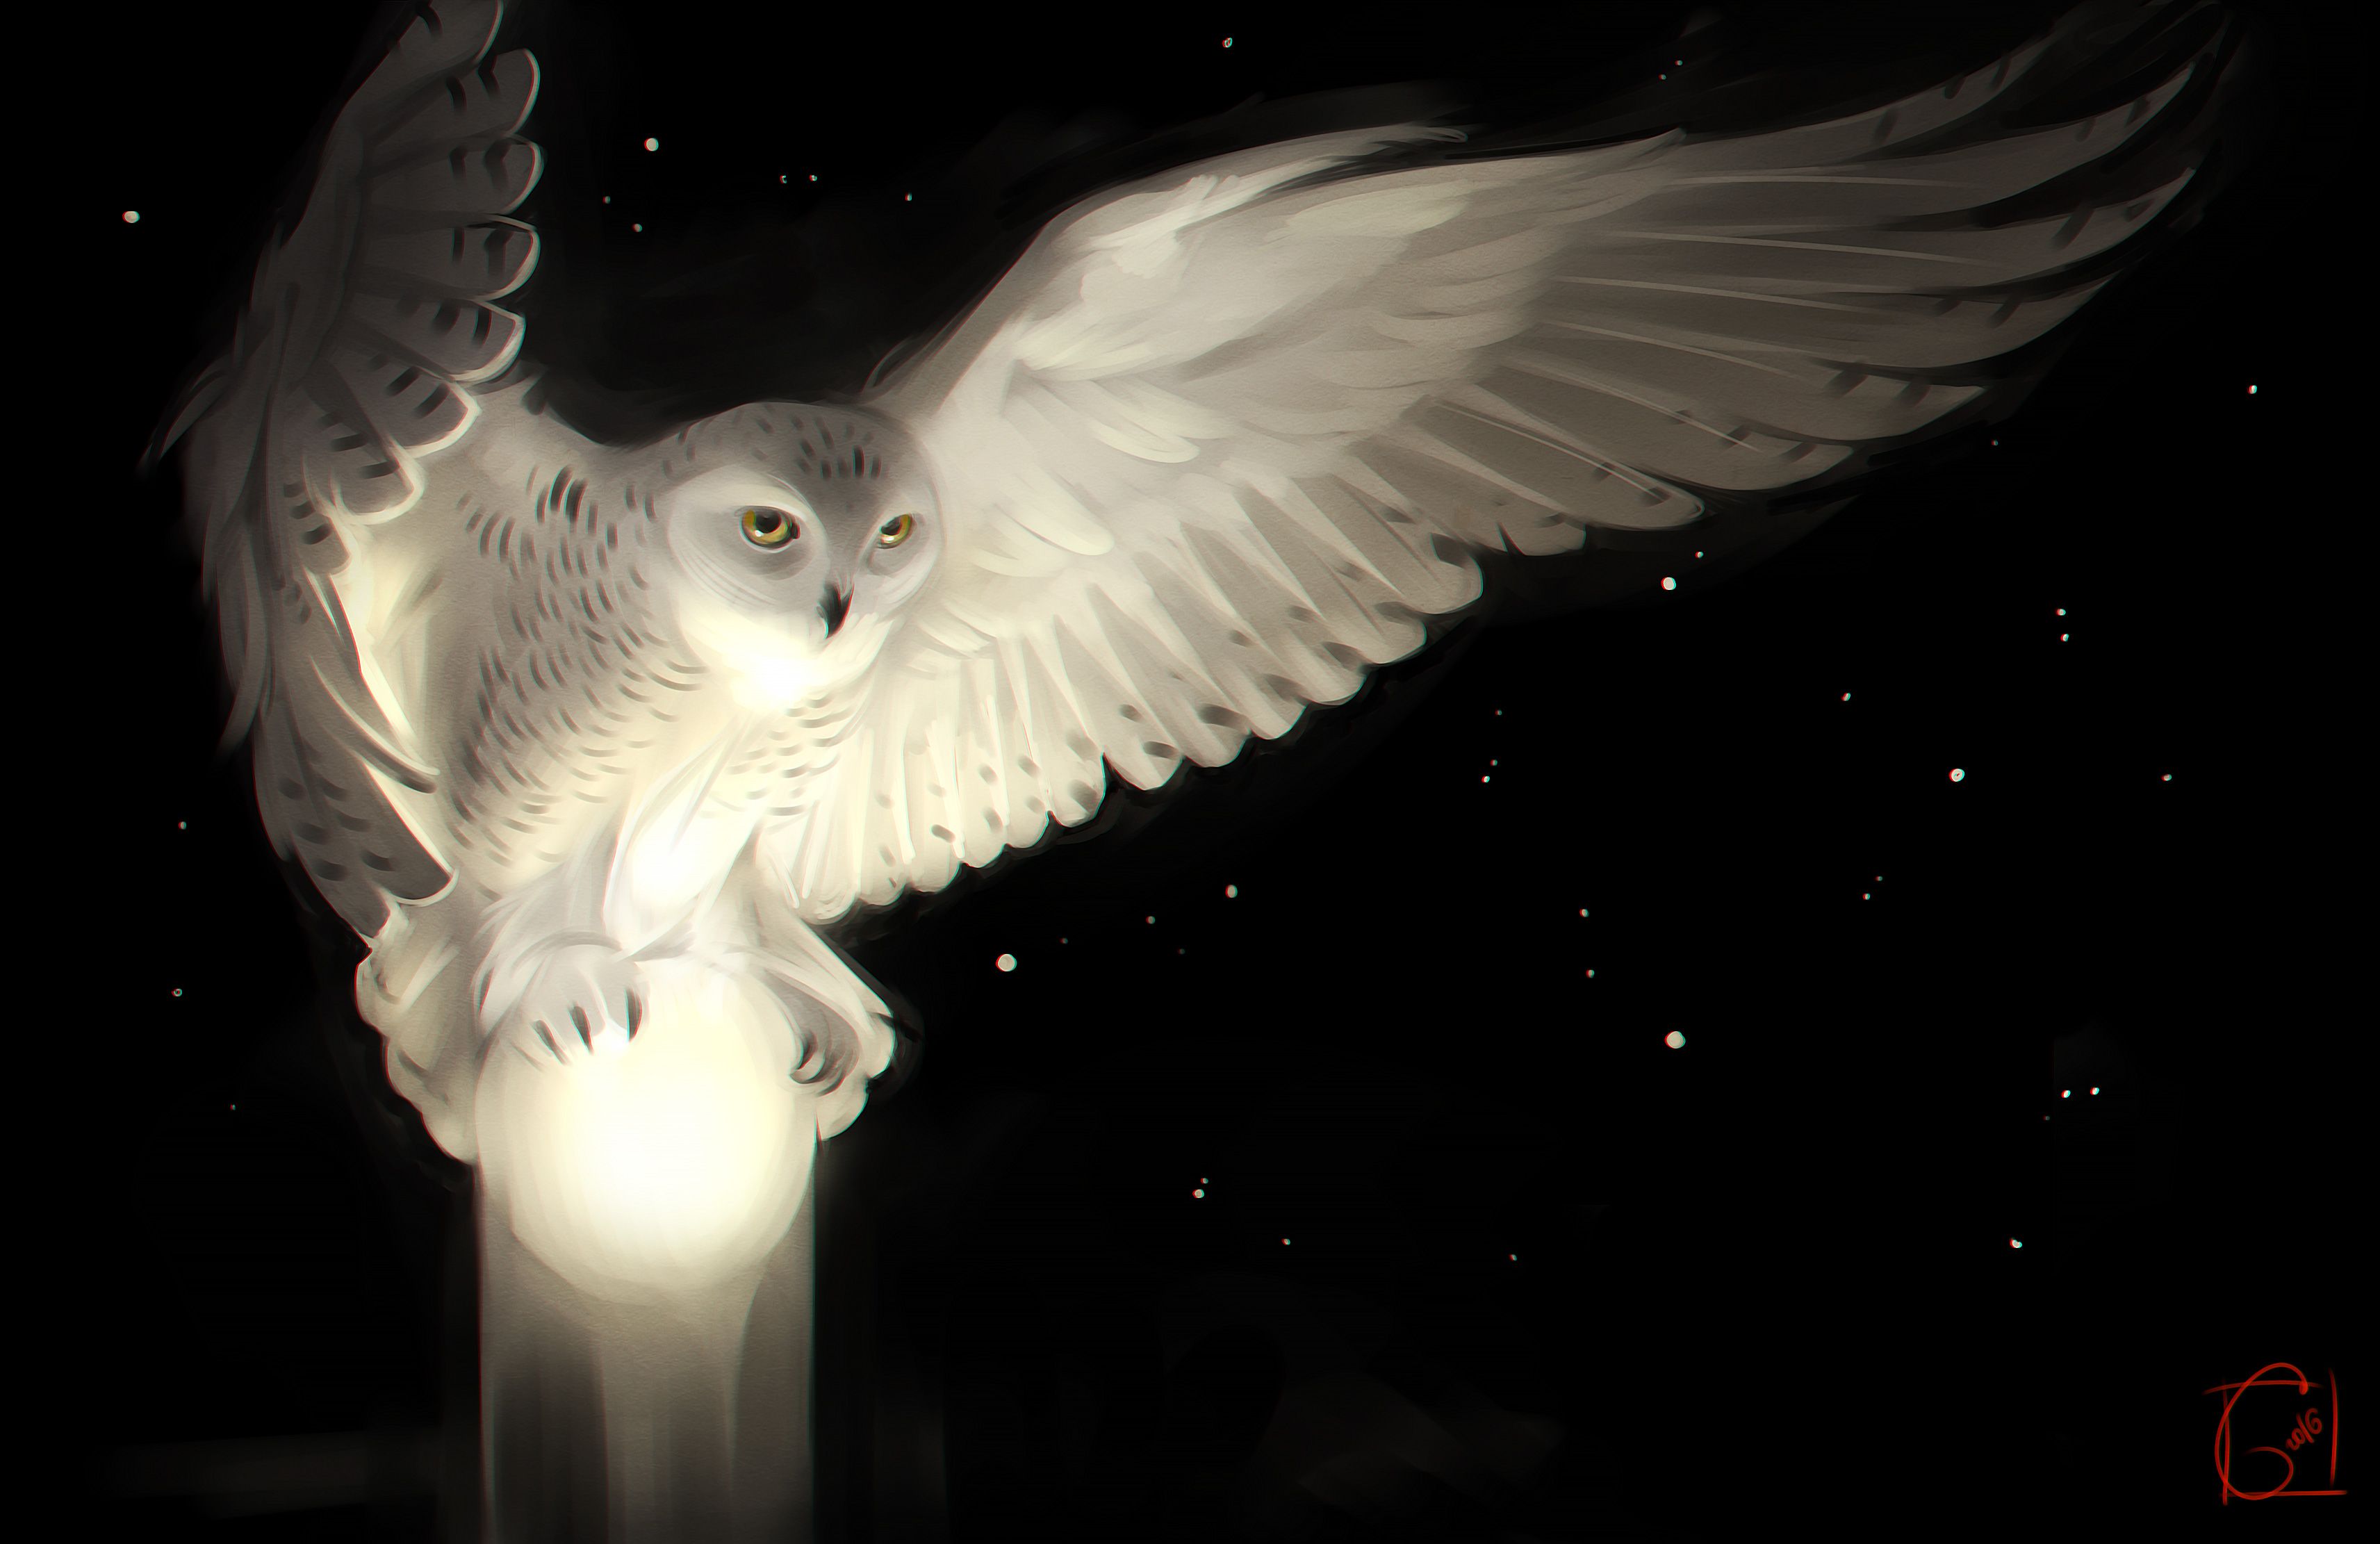 Snowy Owl, artista HD, fondos de pantalla 4k, imágenes, fondos, fotos y